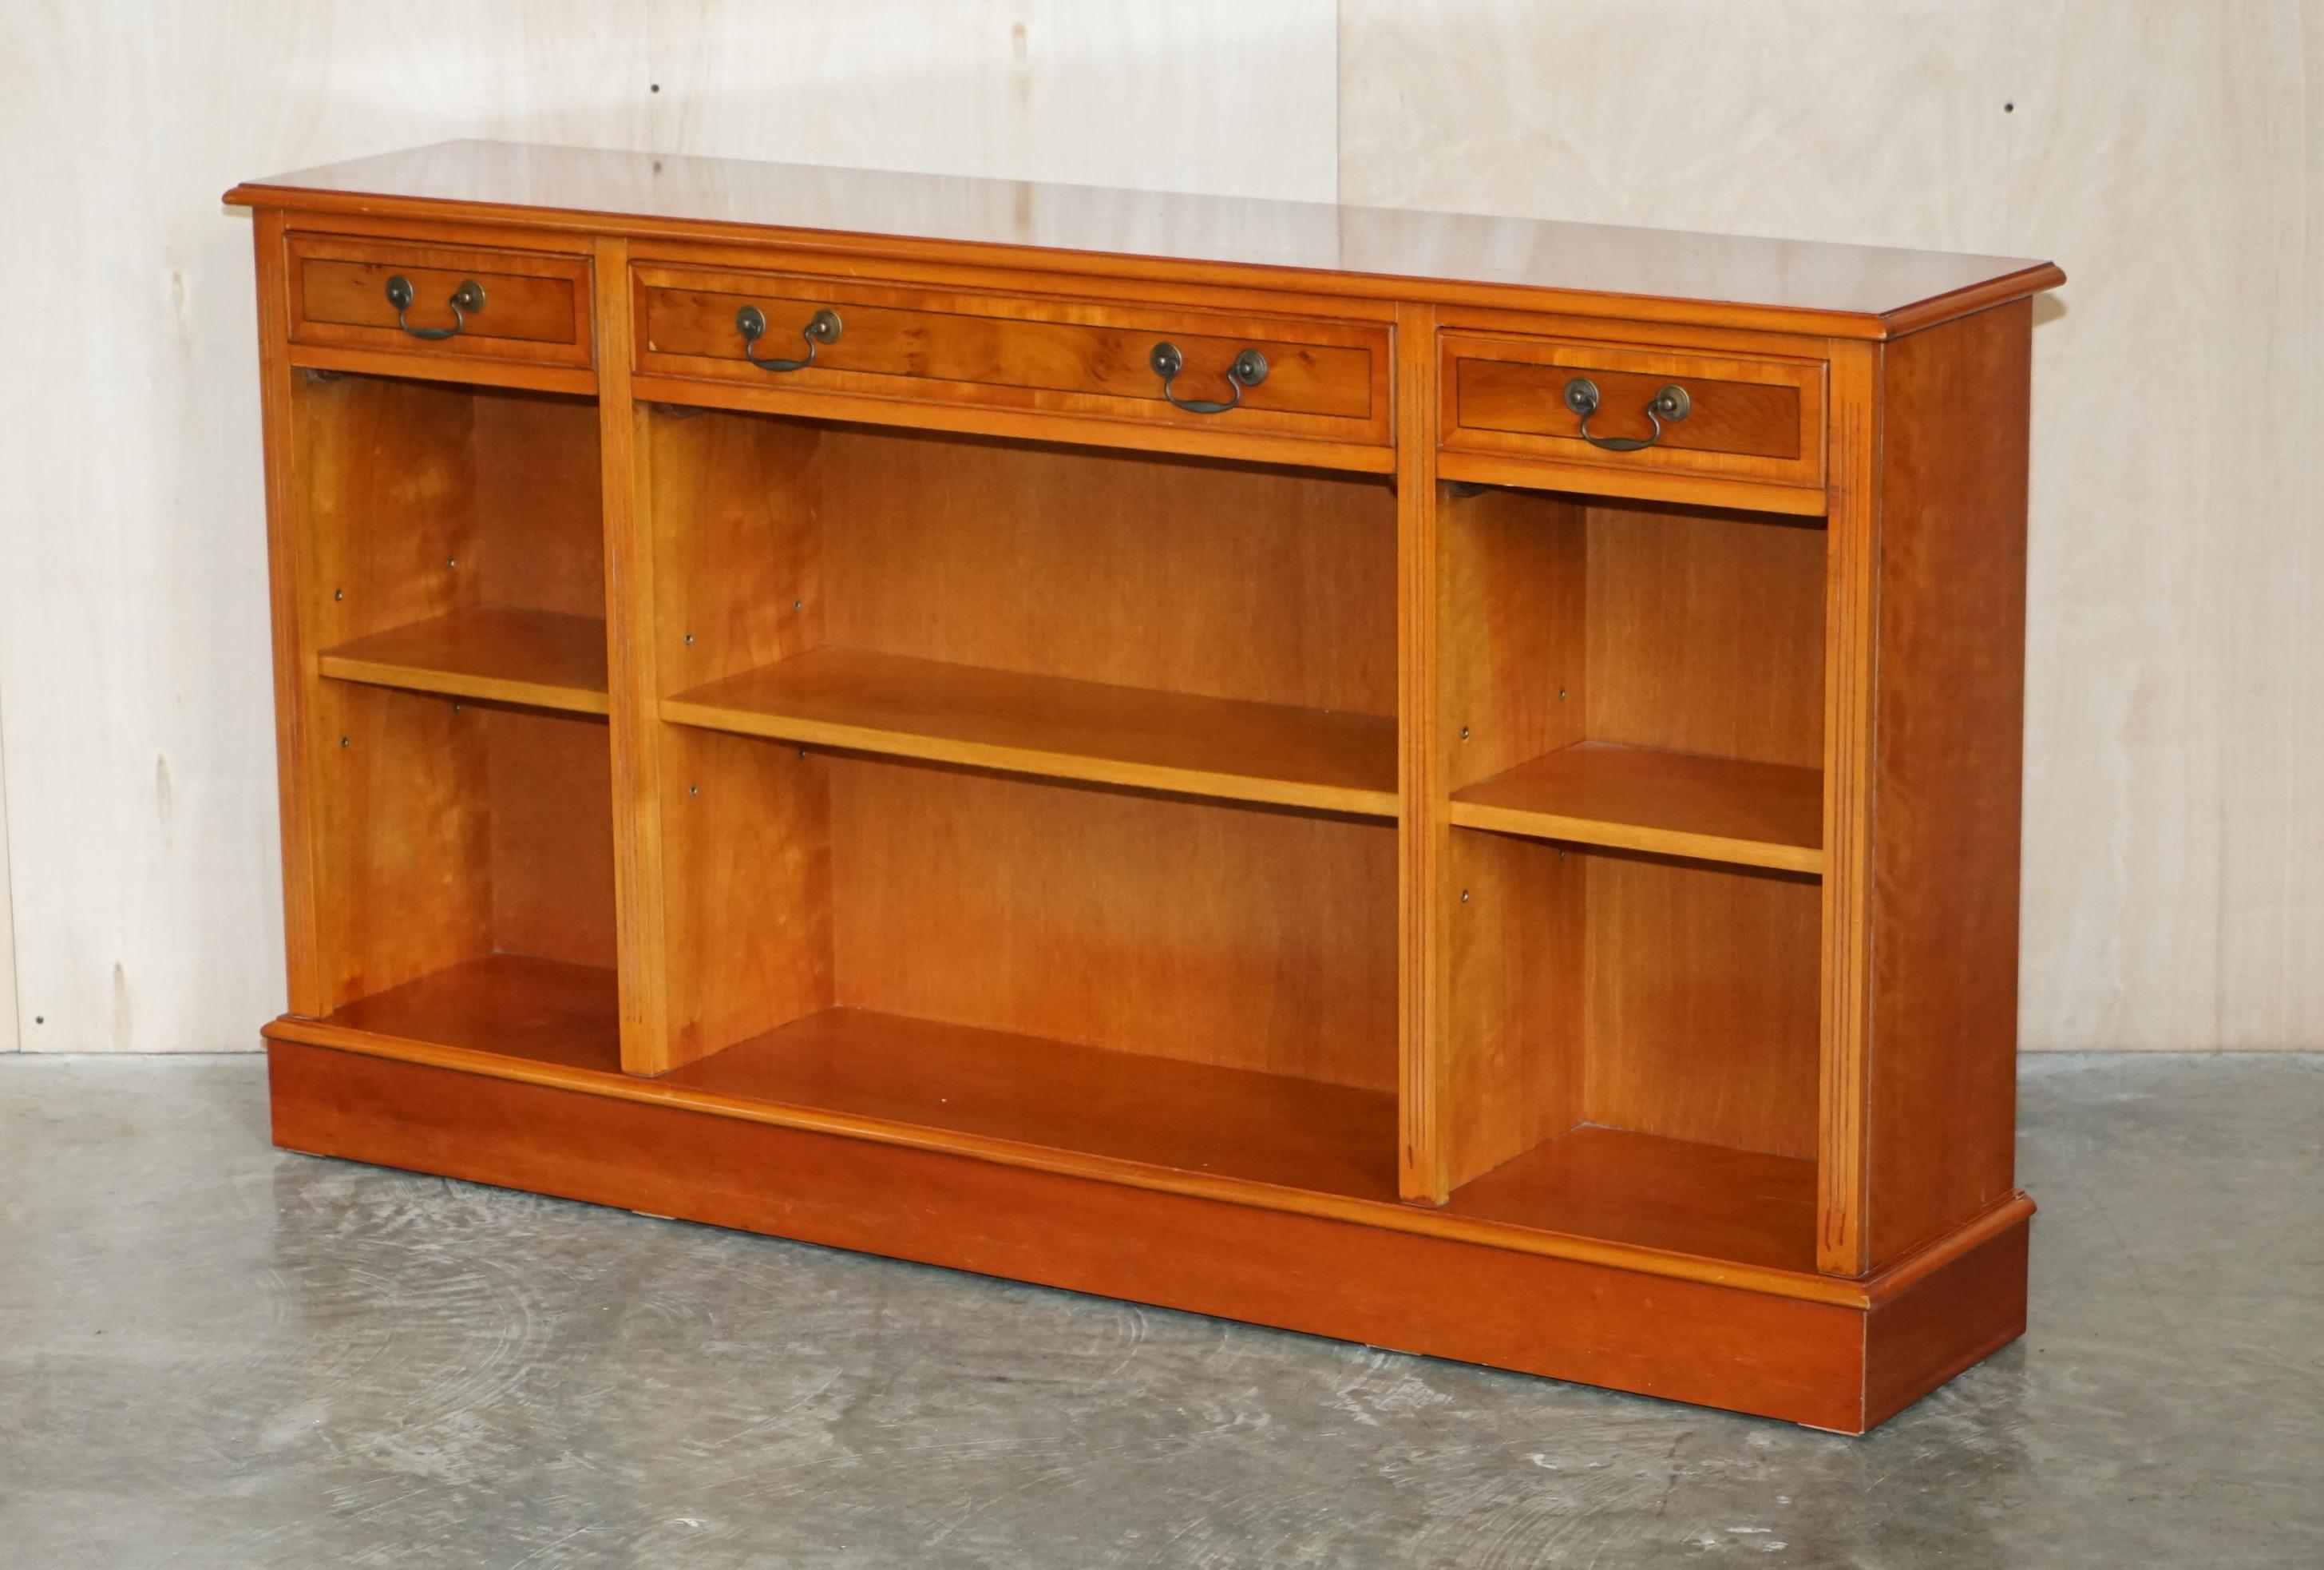 Wir freuen uns, diese schöne Vintage Burr Eibenholz offene Bibliothek Bücherregal / Sideboard mit Schubladen zum Verkauf anbieten. 

Ein gut aussehendes und nützliches Möbelstück, das in jeder Umgebung gut aussieht. Die Regale sind alle